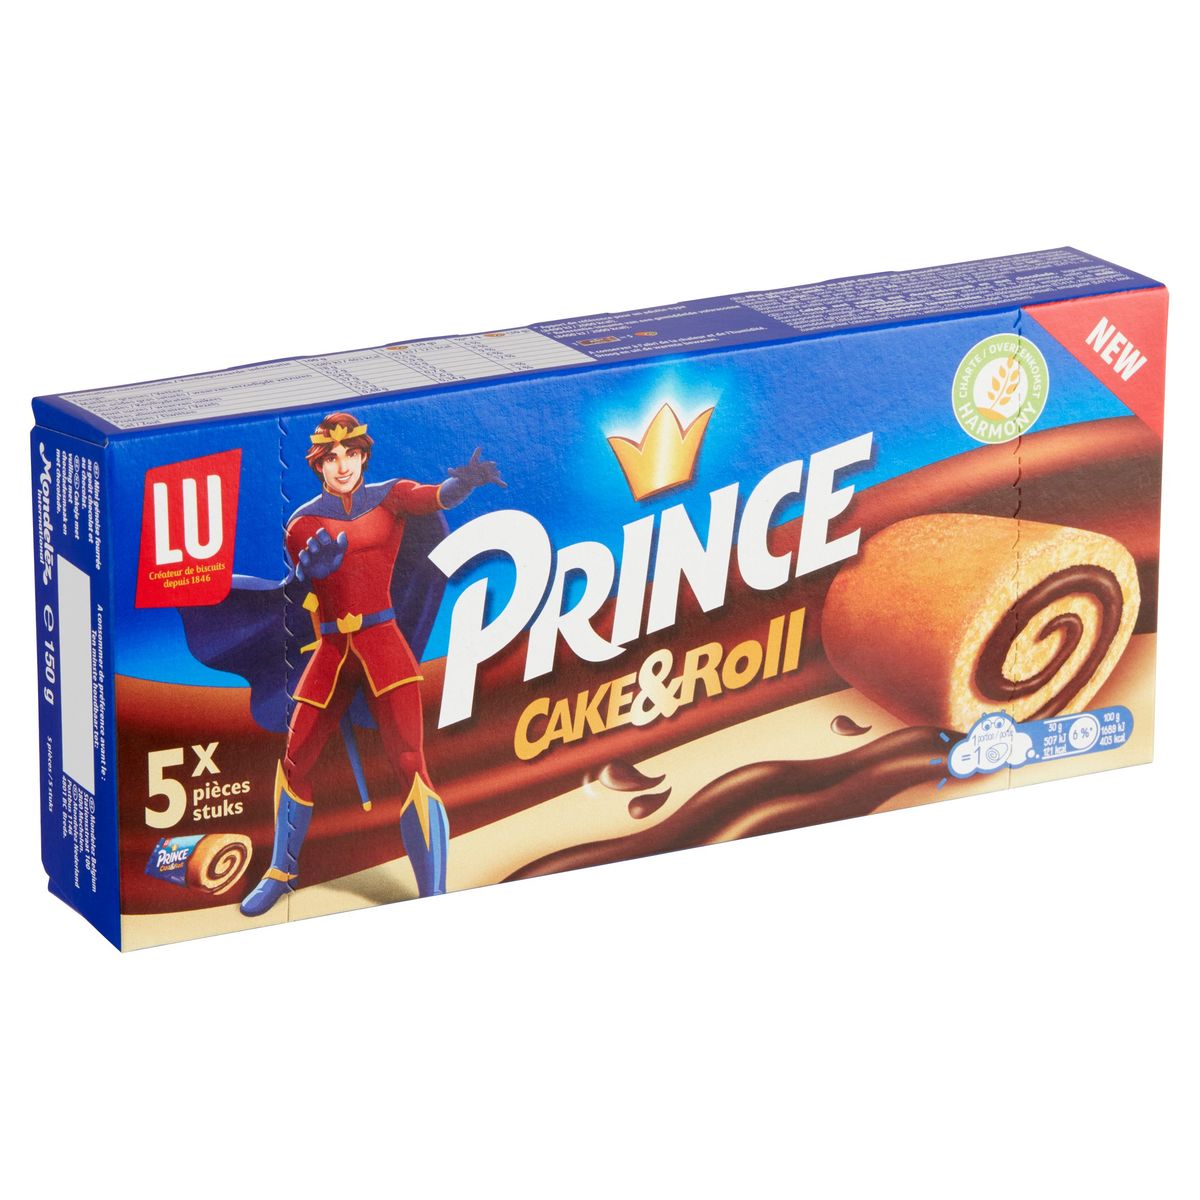 LU, Prince, Cakes, Cake & Choc, Gâteaux, Chocolat, 150 gr